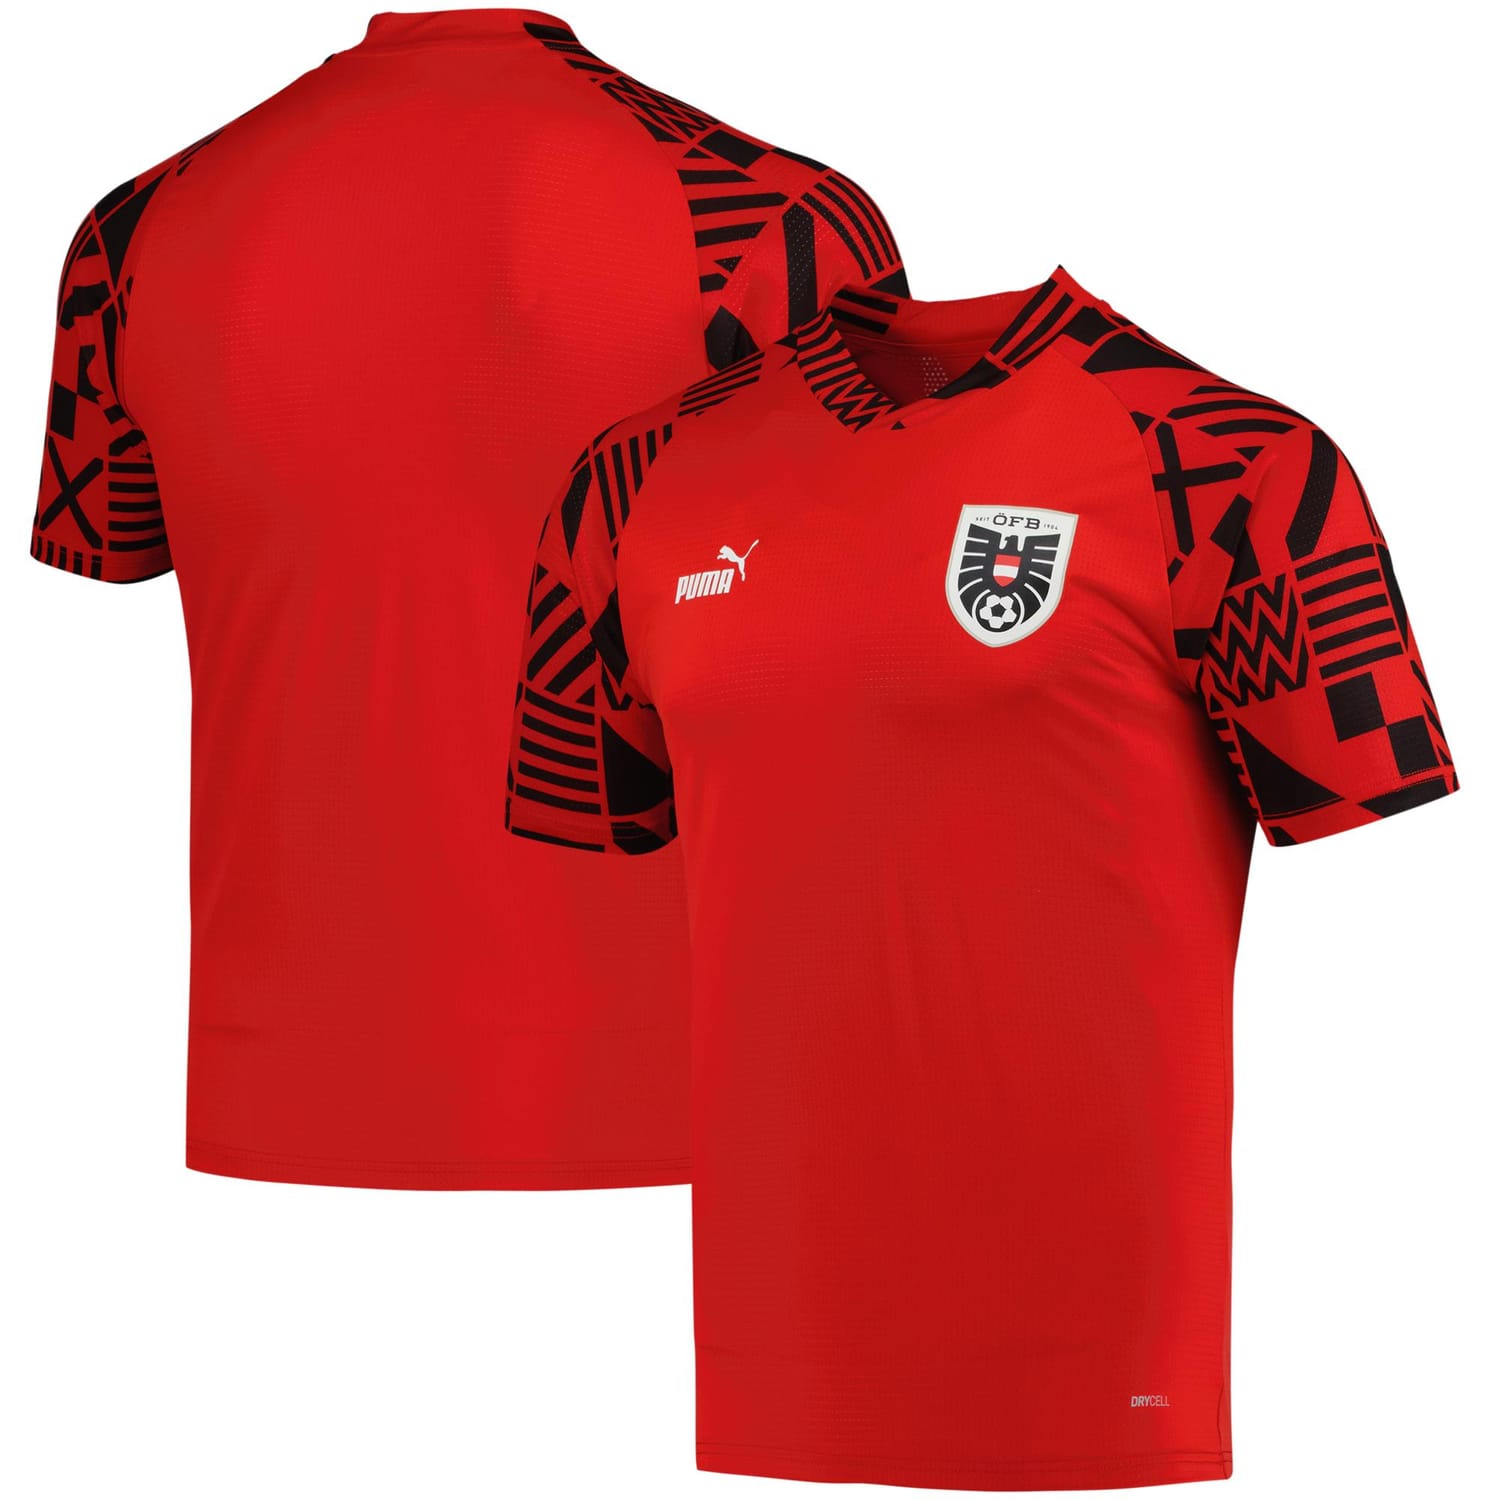 Austria National Team Pre-Match Jersey Shirt Red for Men